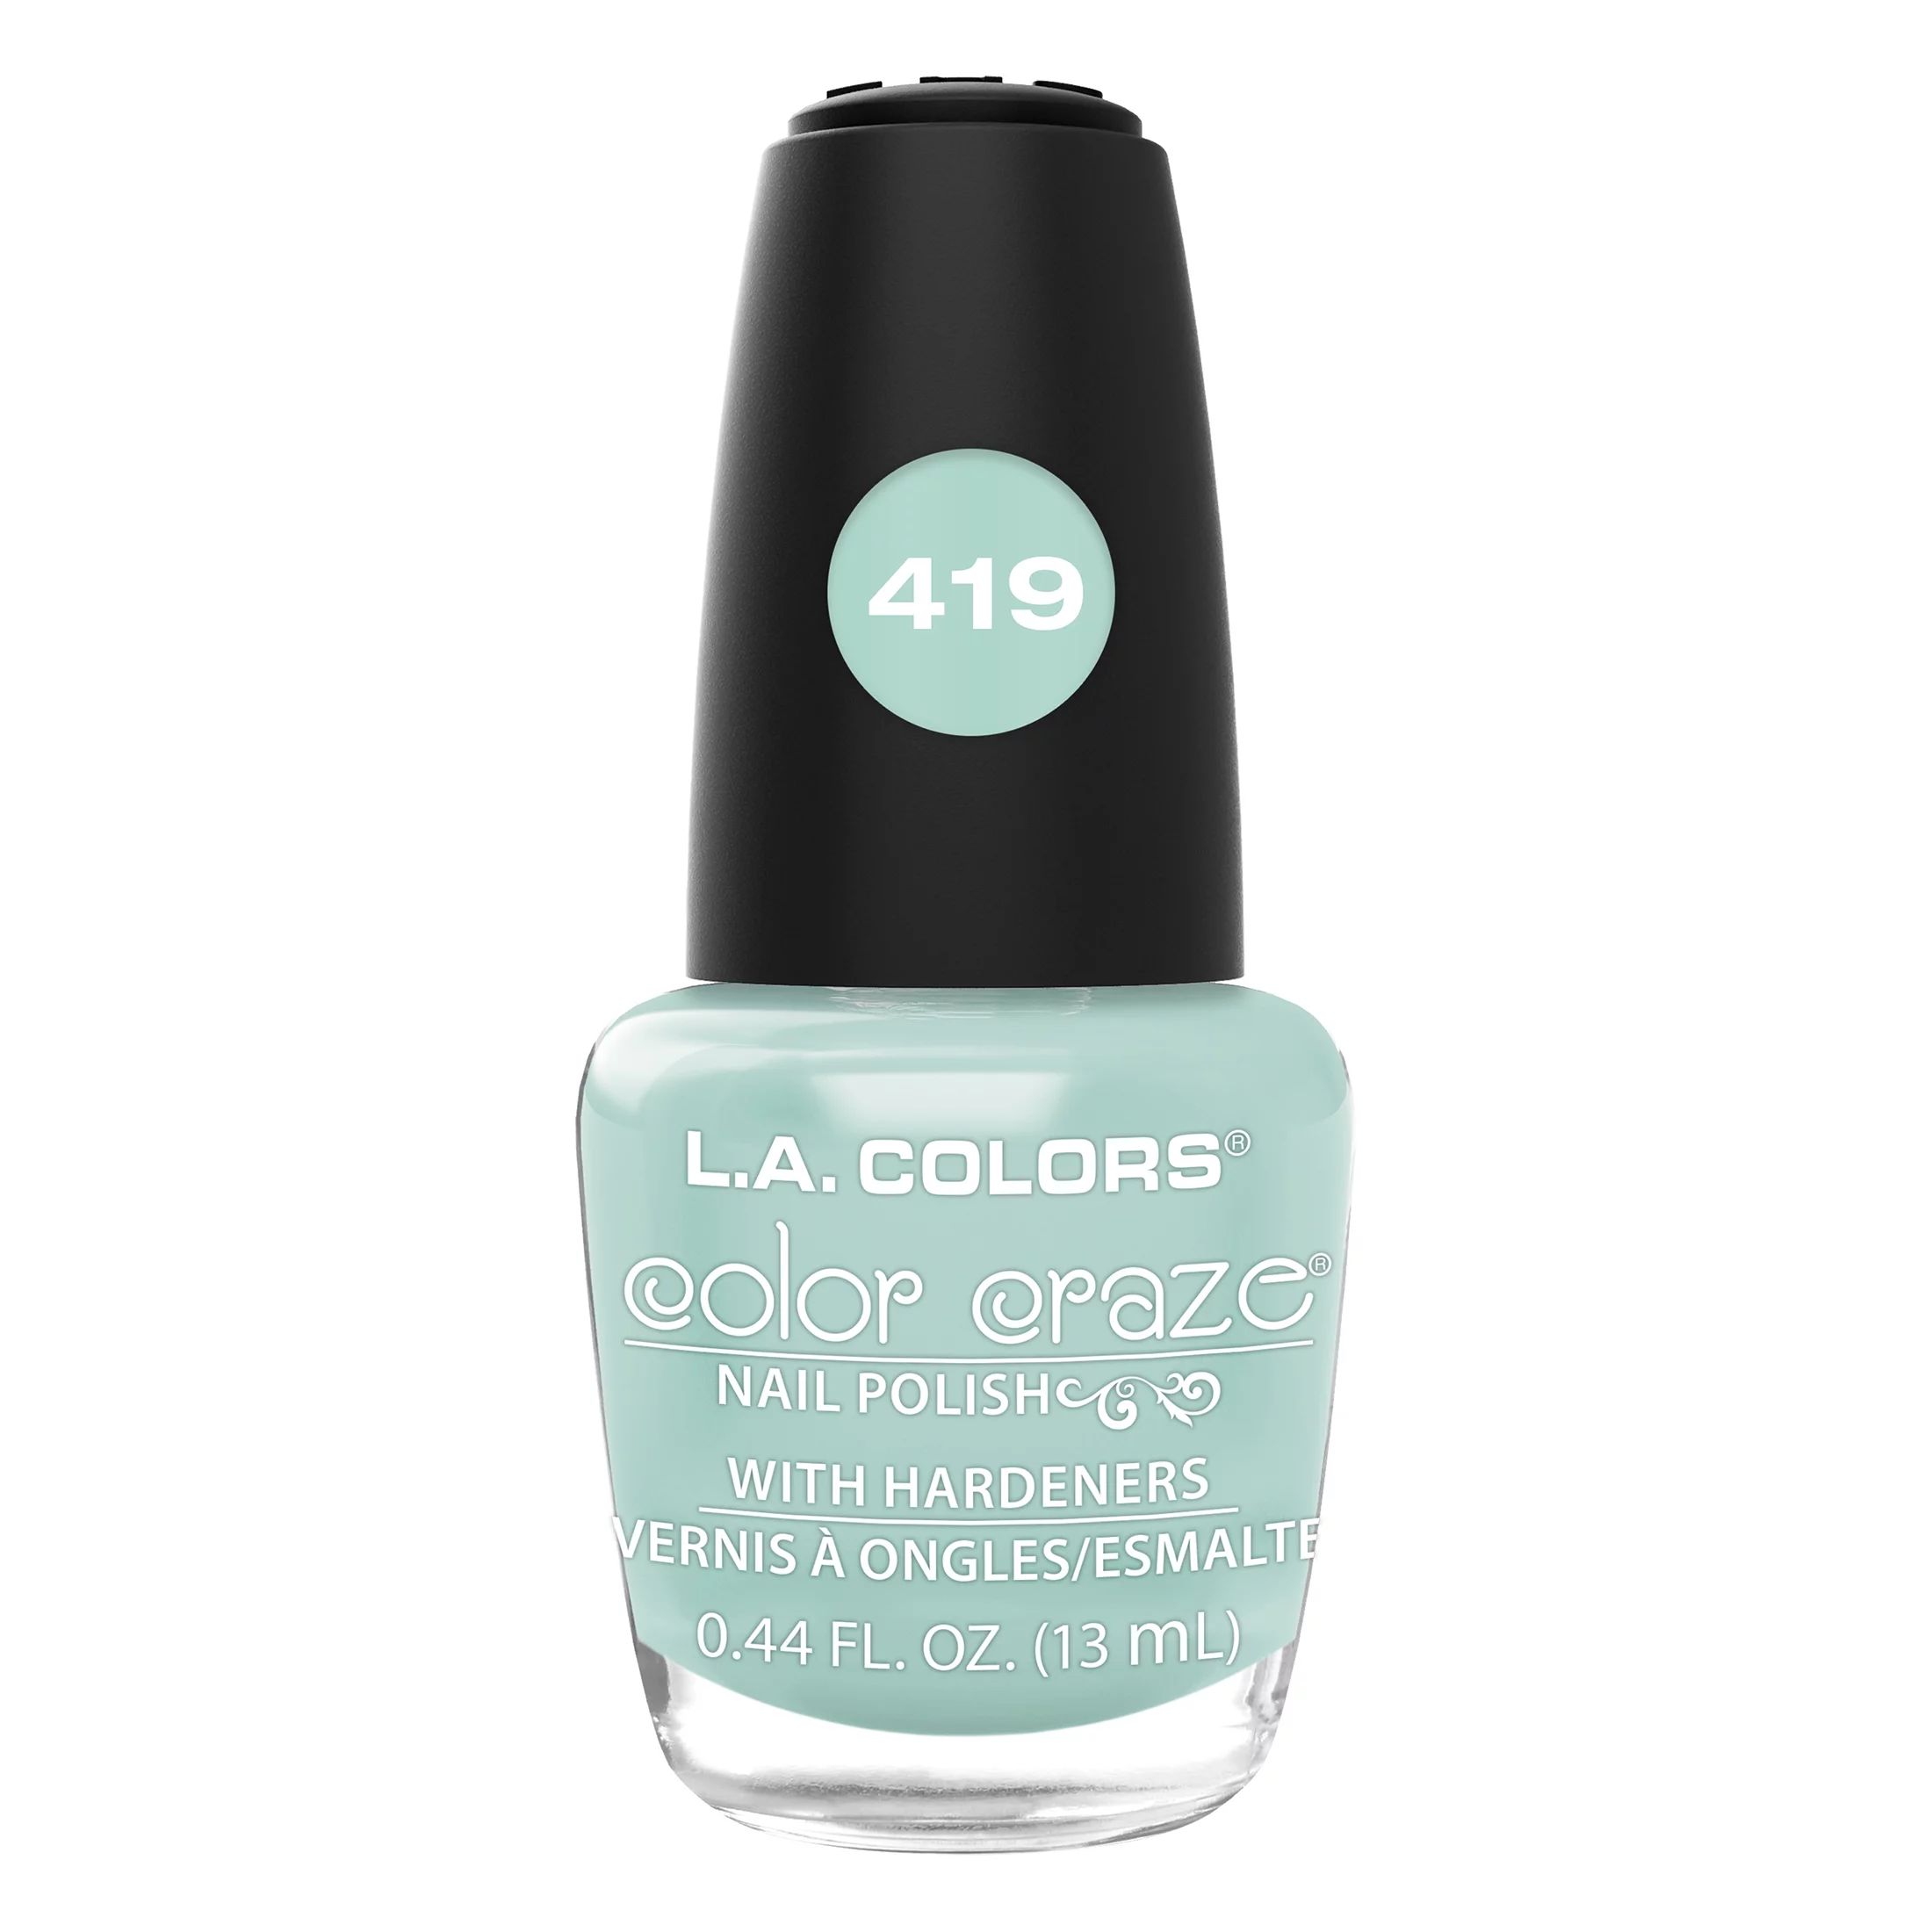 L.A. COLORS Color Craze Nail Polish, Pixie, 0.44 fl oz | Walmart (US)